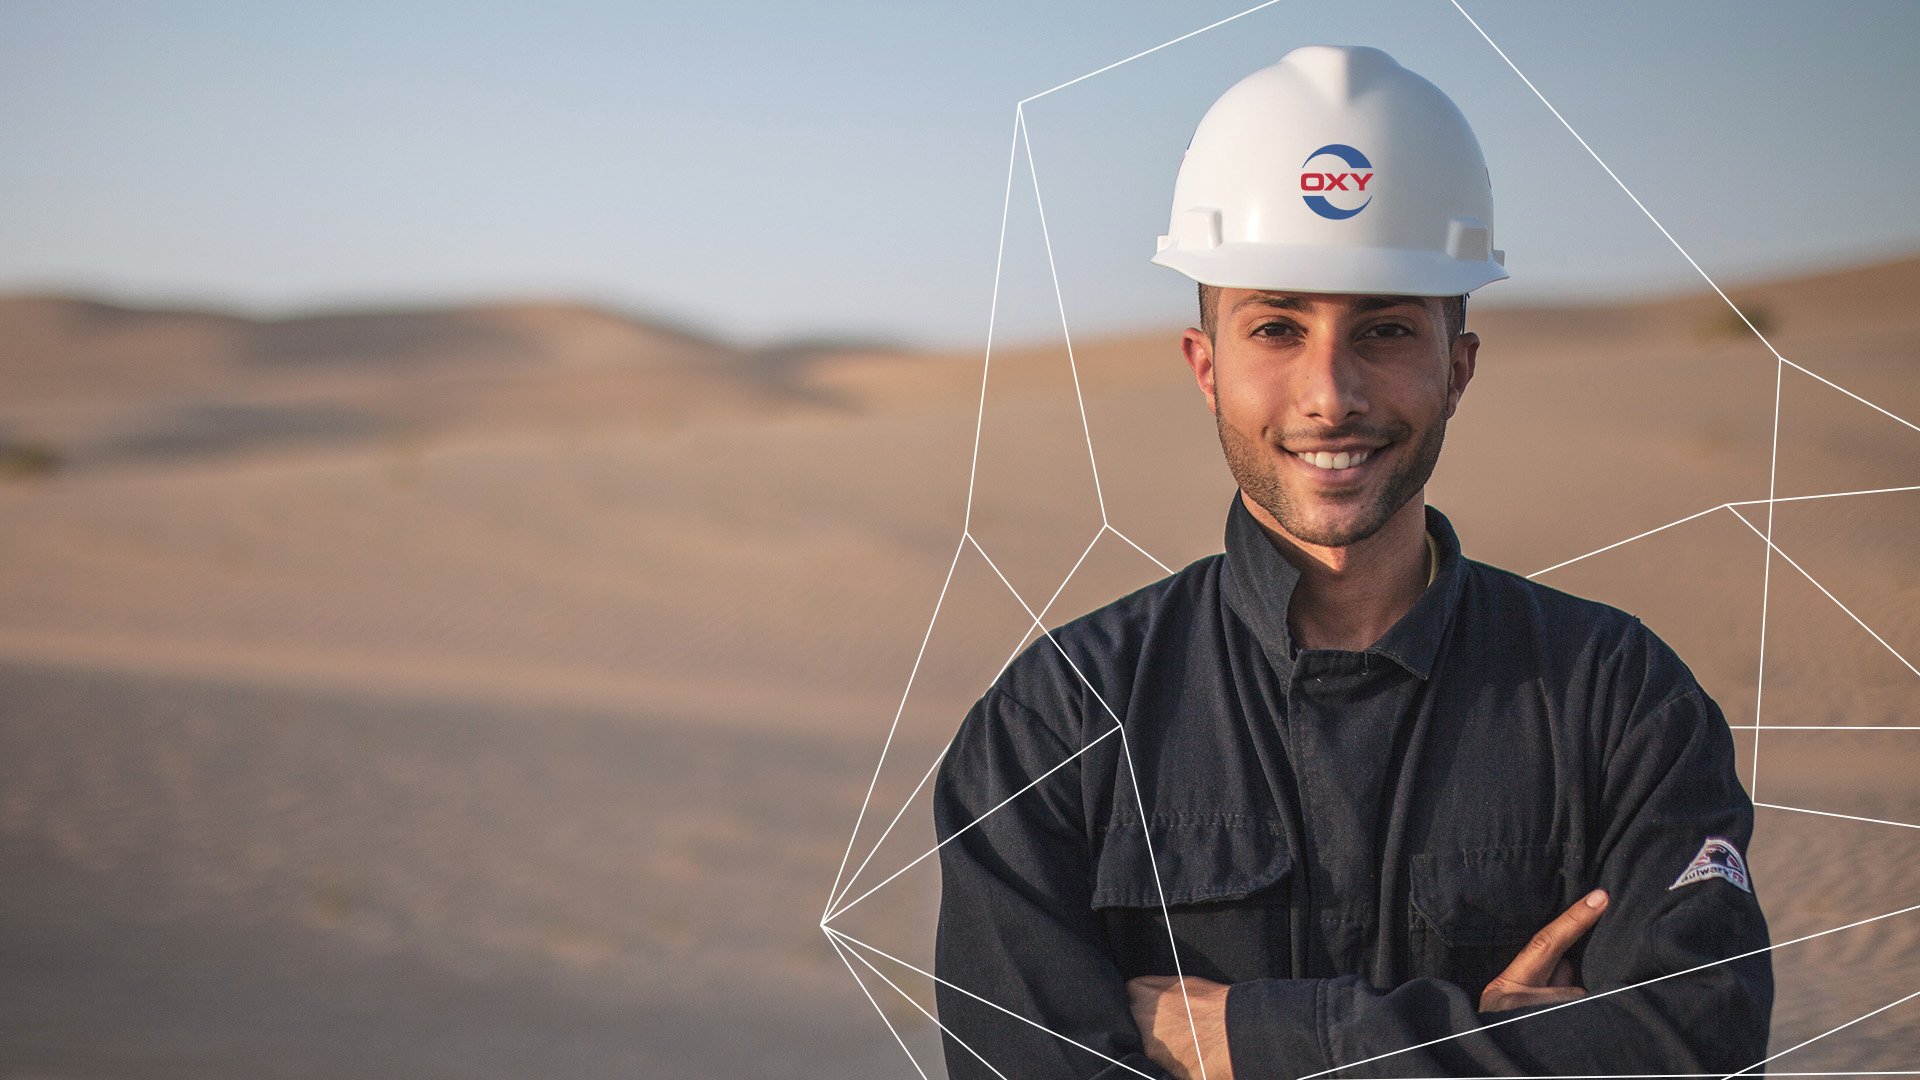 Male Oxy employee wearing hardhat in UAE desert 